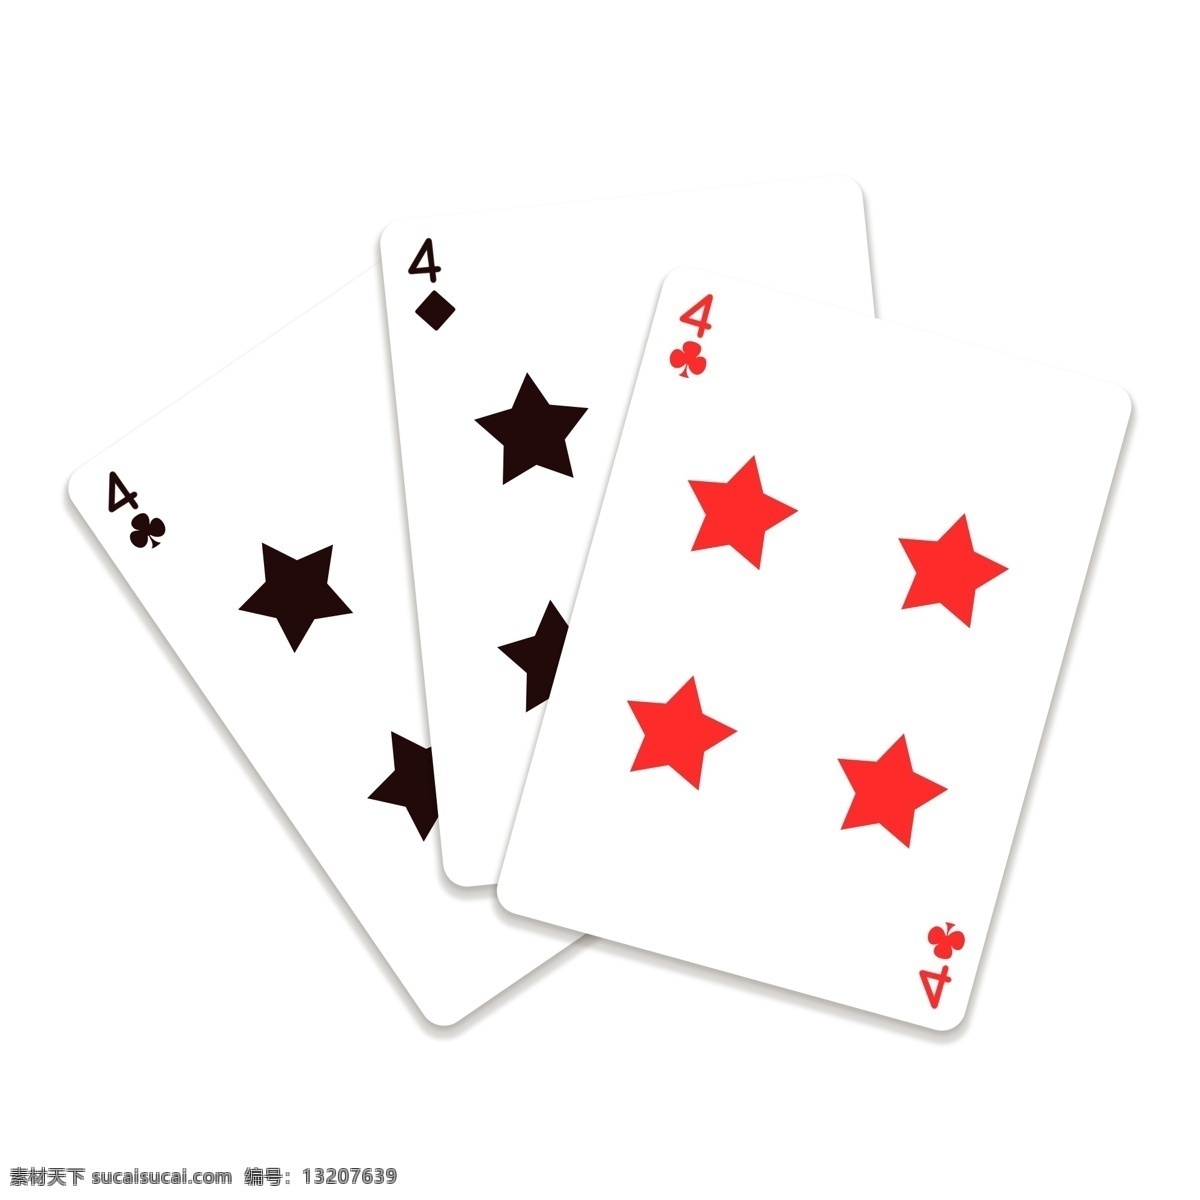 娱乐 仿真 五角星 扑克牌 纸牌 打牌 纸牌游戏 娱乐游戏 红色五角星 黑色五角星 仿真扑克牌 数字